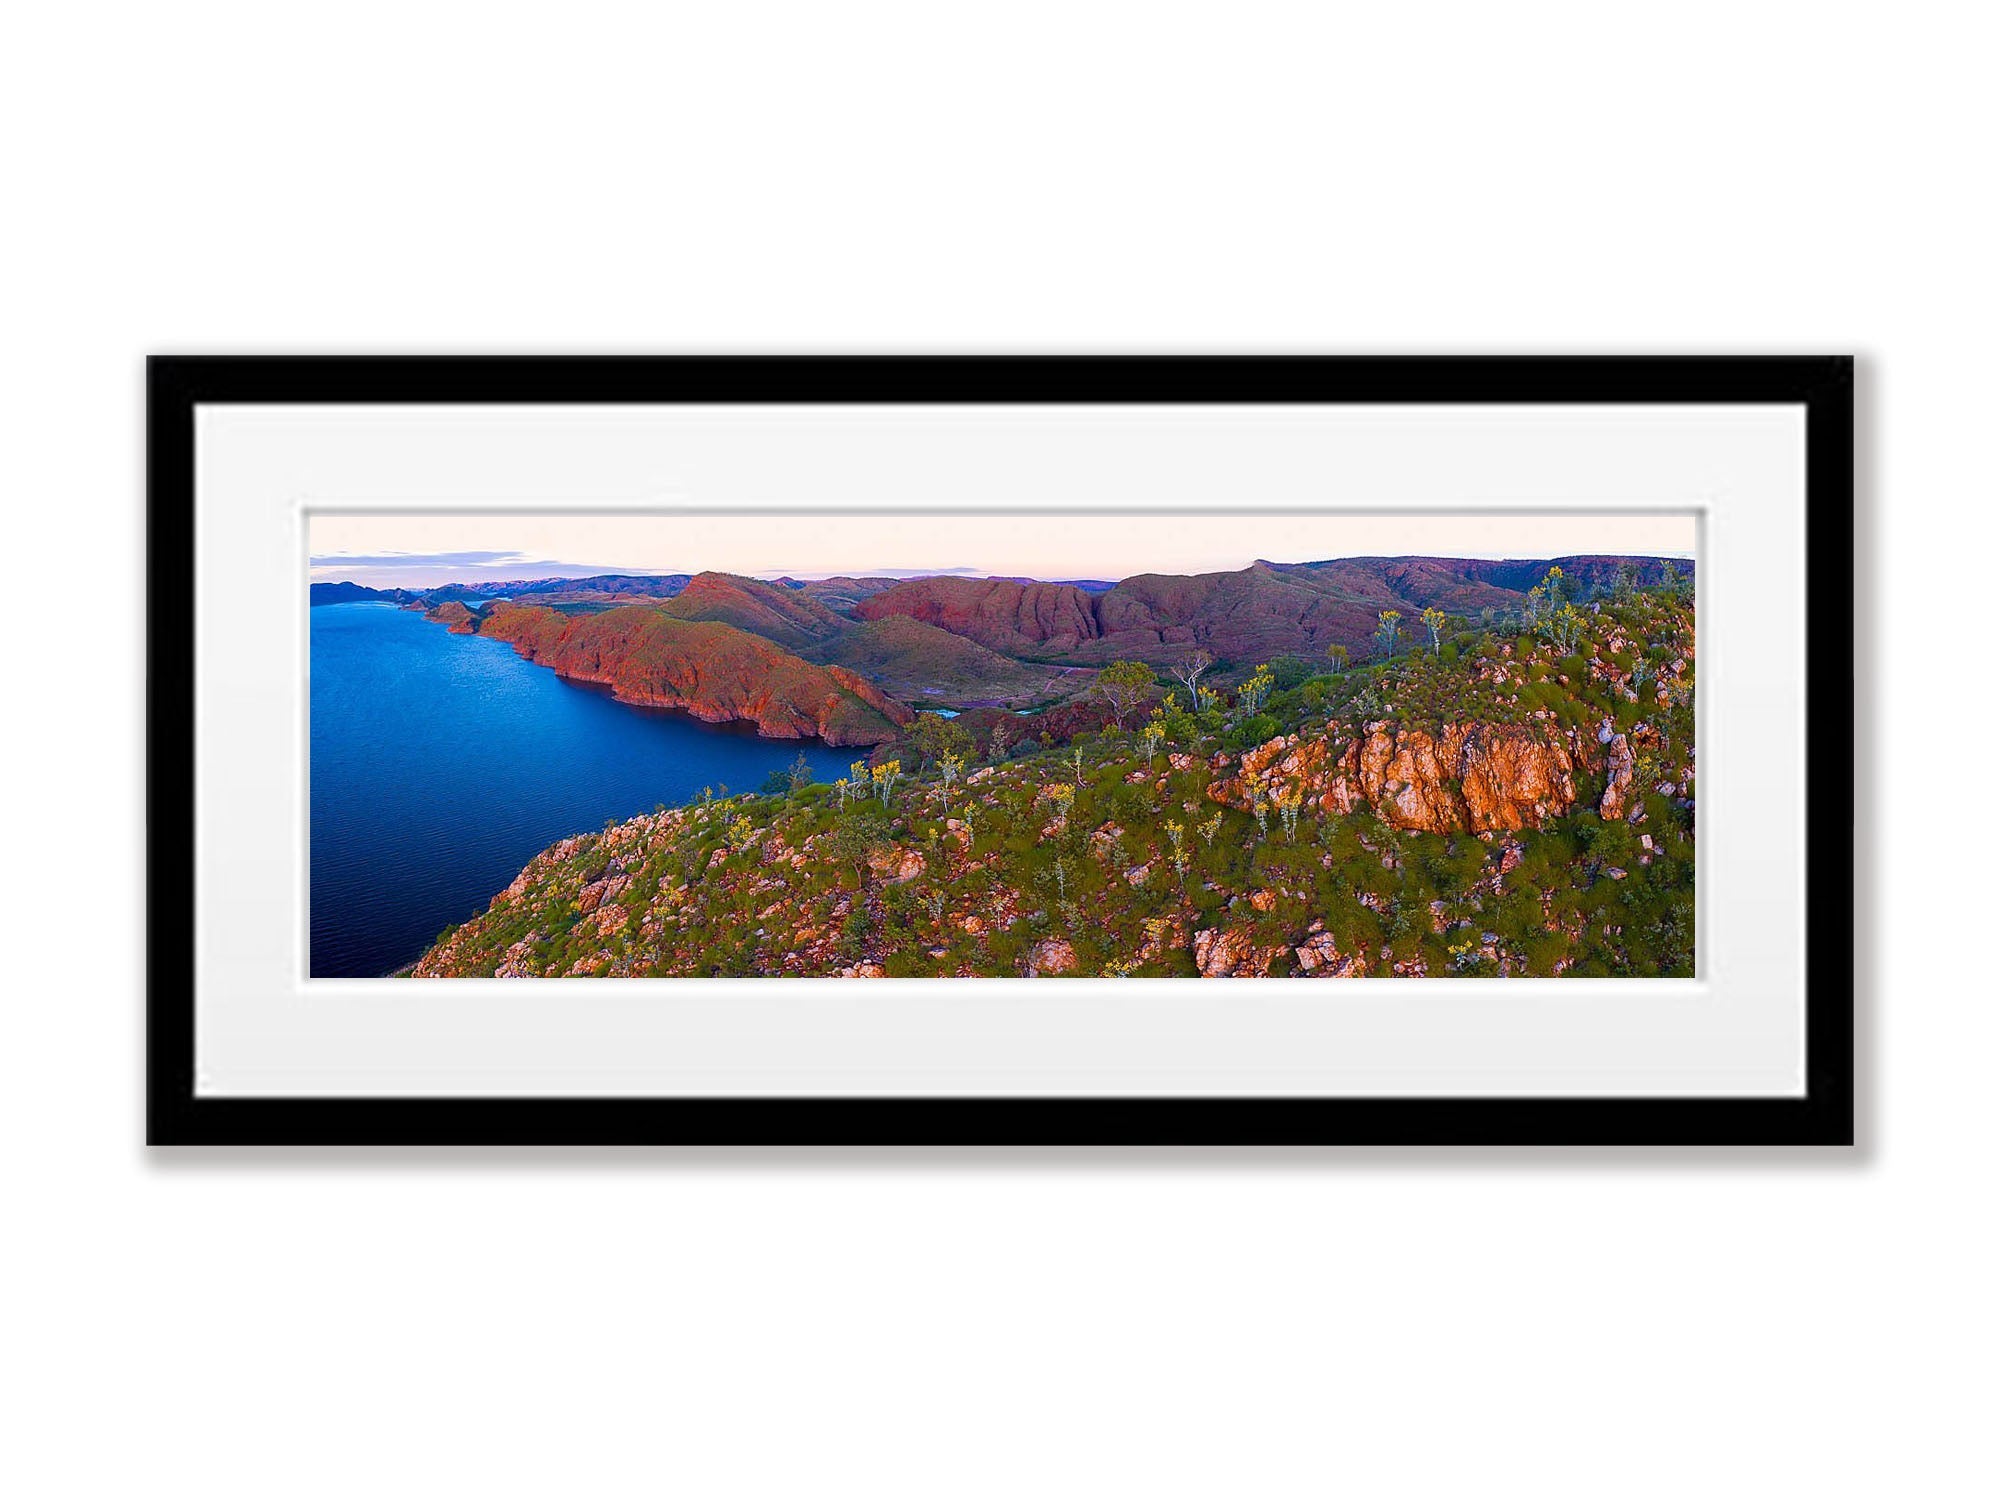 Lake Argyle #17 - The Kimberley